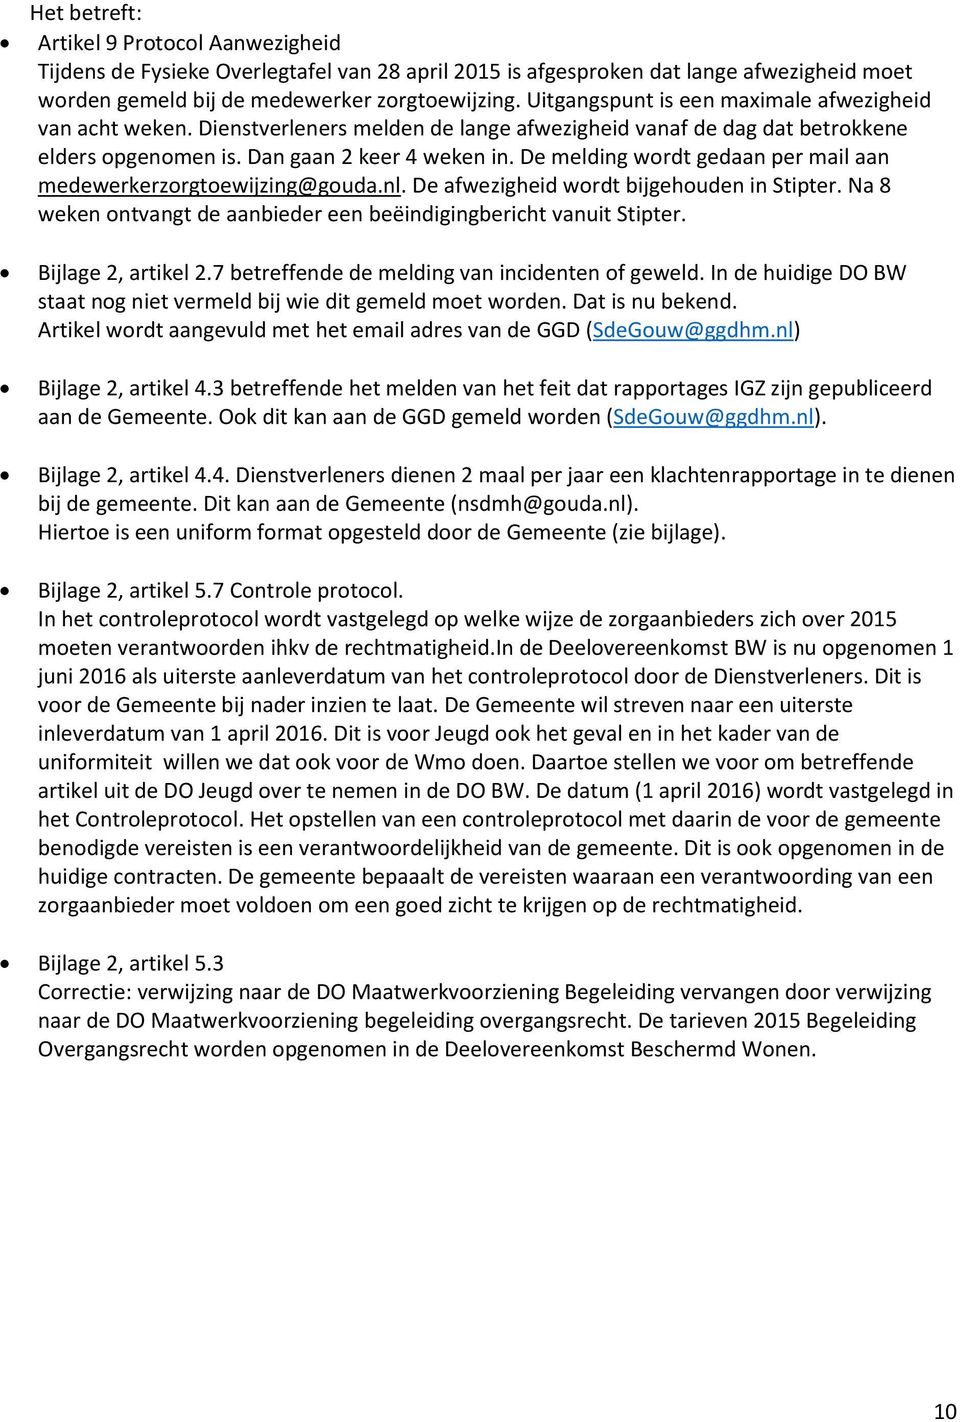 De melding wordt gedaan per mail aan medewerkerzorgtoewijzing@gouda.nl. De afwezigheid wordt bijgehouden in Stipter. Na 8 weken ontvangt de aanbieder een beëindigingbericht vanuit Stipter.